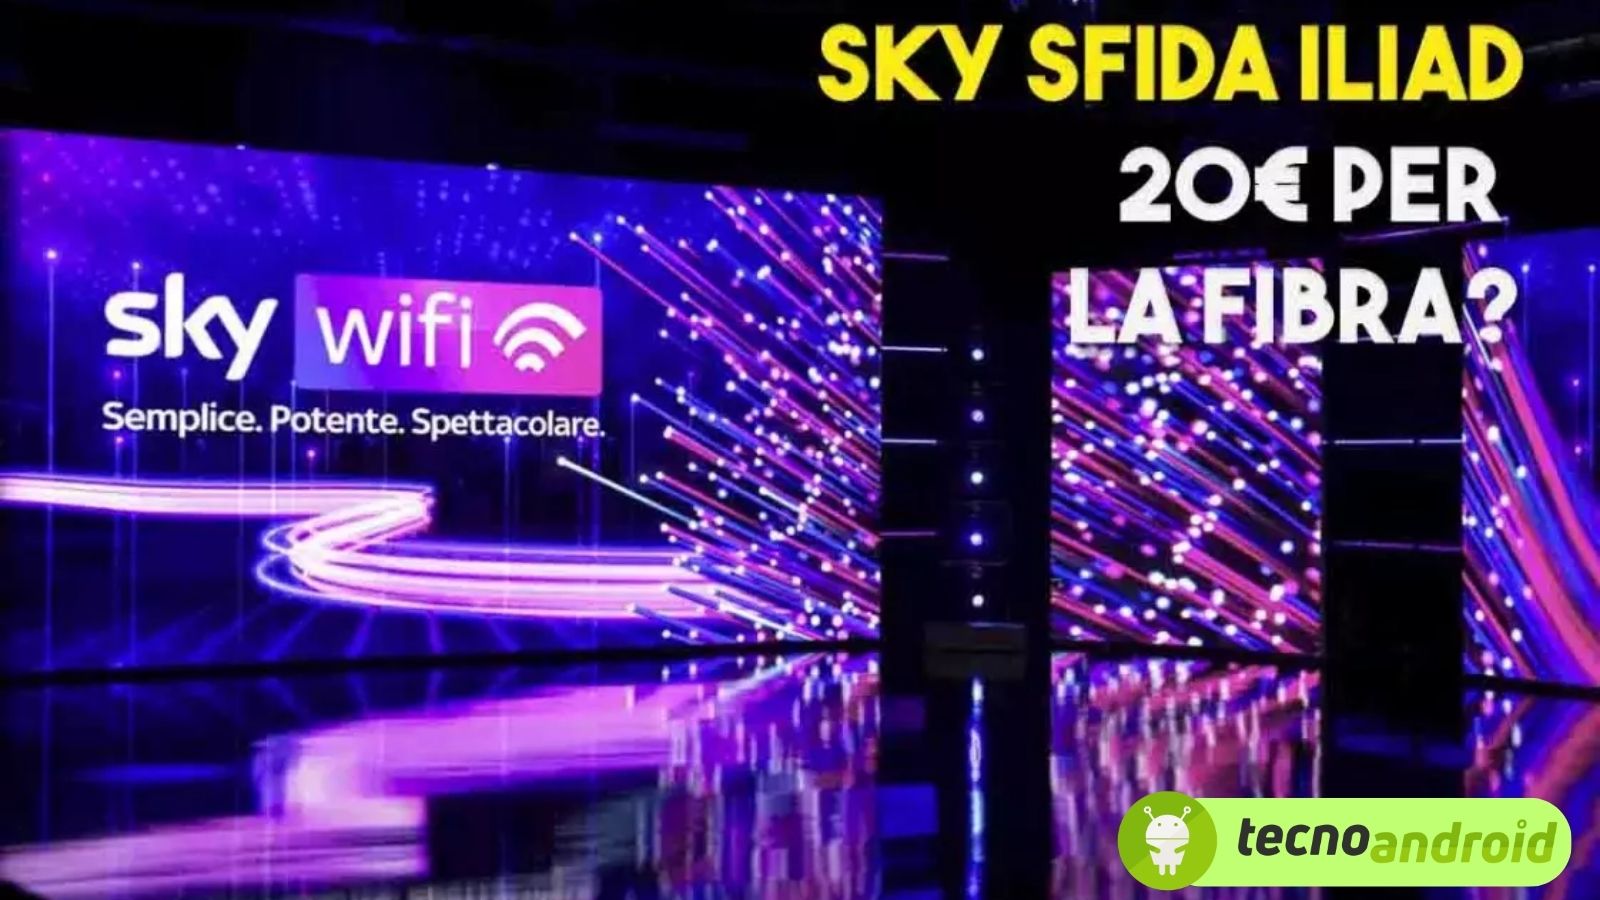 Sky Wi-Fi sfida Iliad: in arrivo una promozione da 20 euro